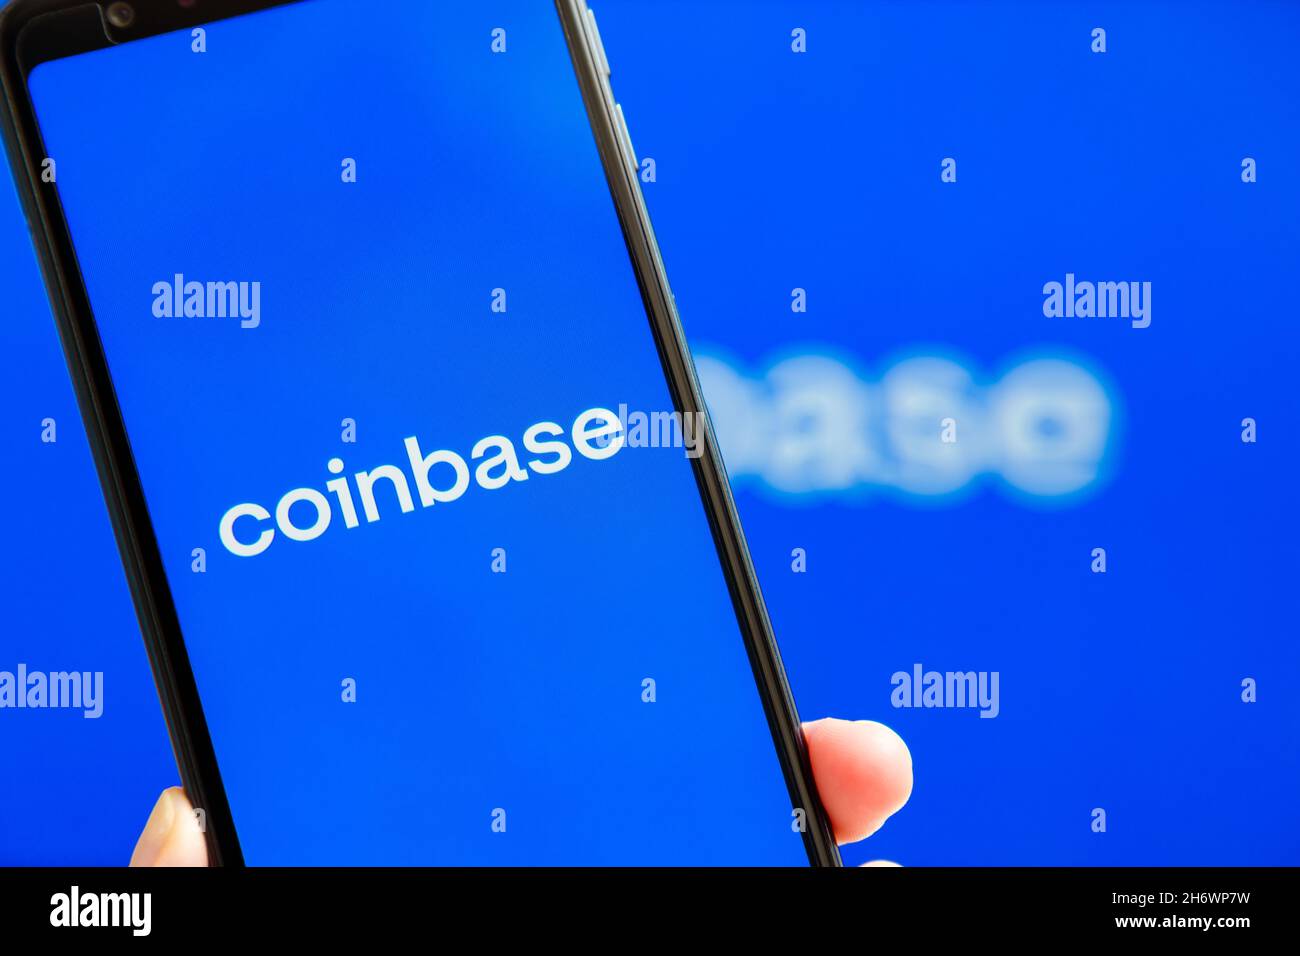 Ucraina, Odessa - 9 ottobre 2021: Applicazione mobile Coinbase in esecuzione sullo schermo dello smartphone con logo Coinbase sullo sfondo. Coinbase - criptocurrene americano Foto Stock